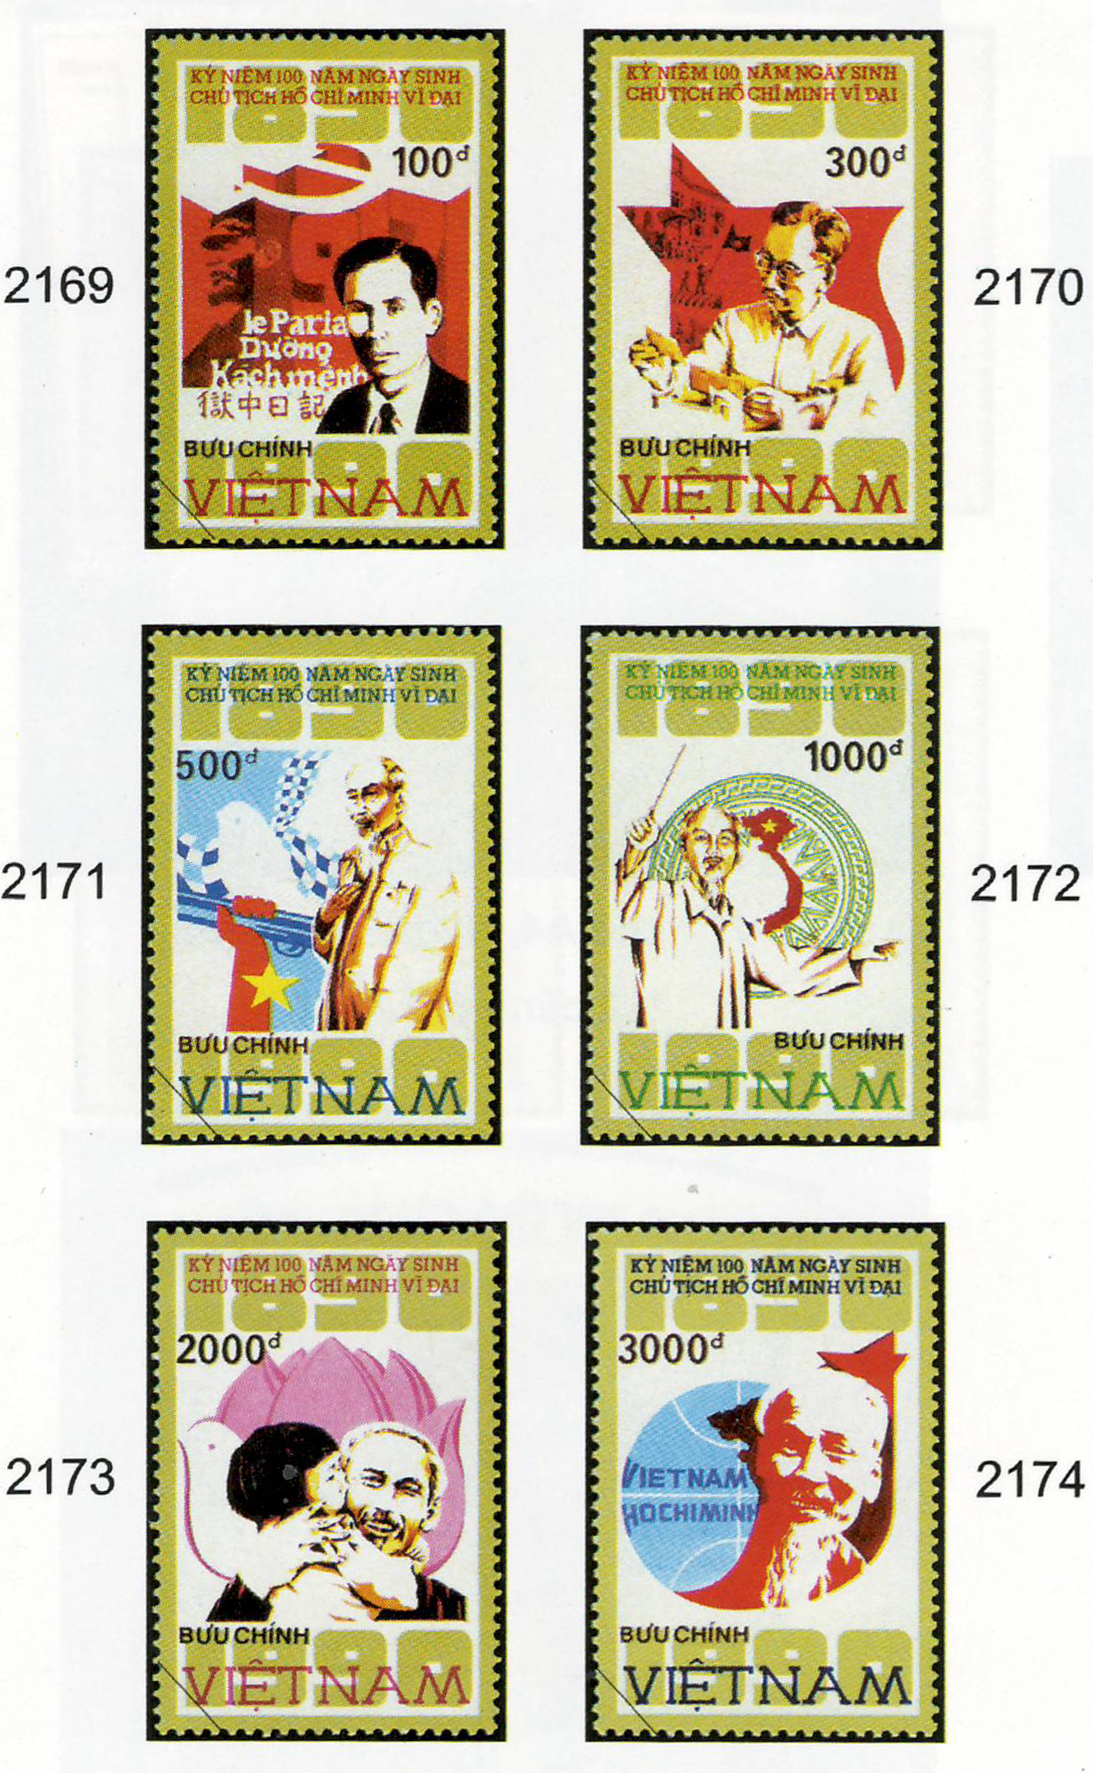 Bộ tem kỷ niệm 100 năm ngày sinh Chủ tịch Hồ Chí Minh (19/5/1890-1990) do họa sỹ Trần Thế Vinh thể hiện.